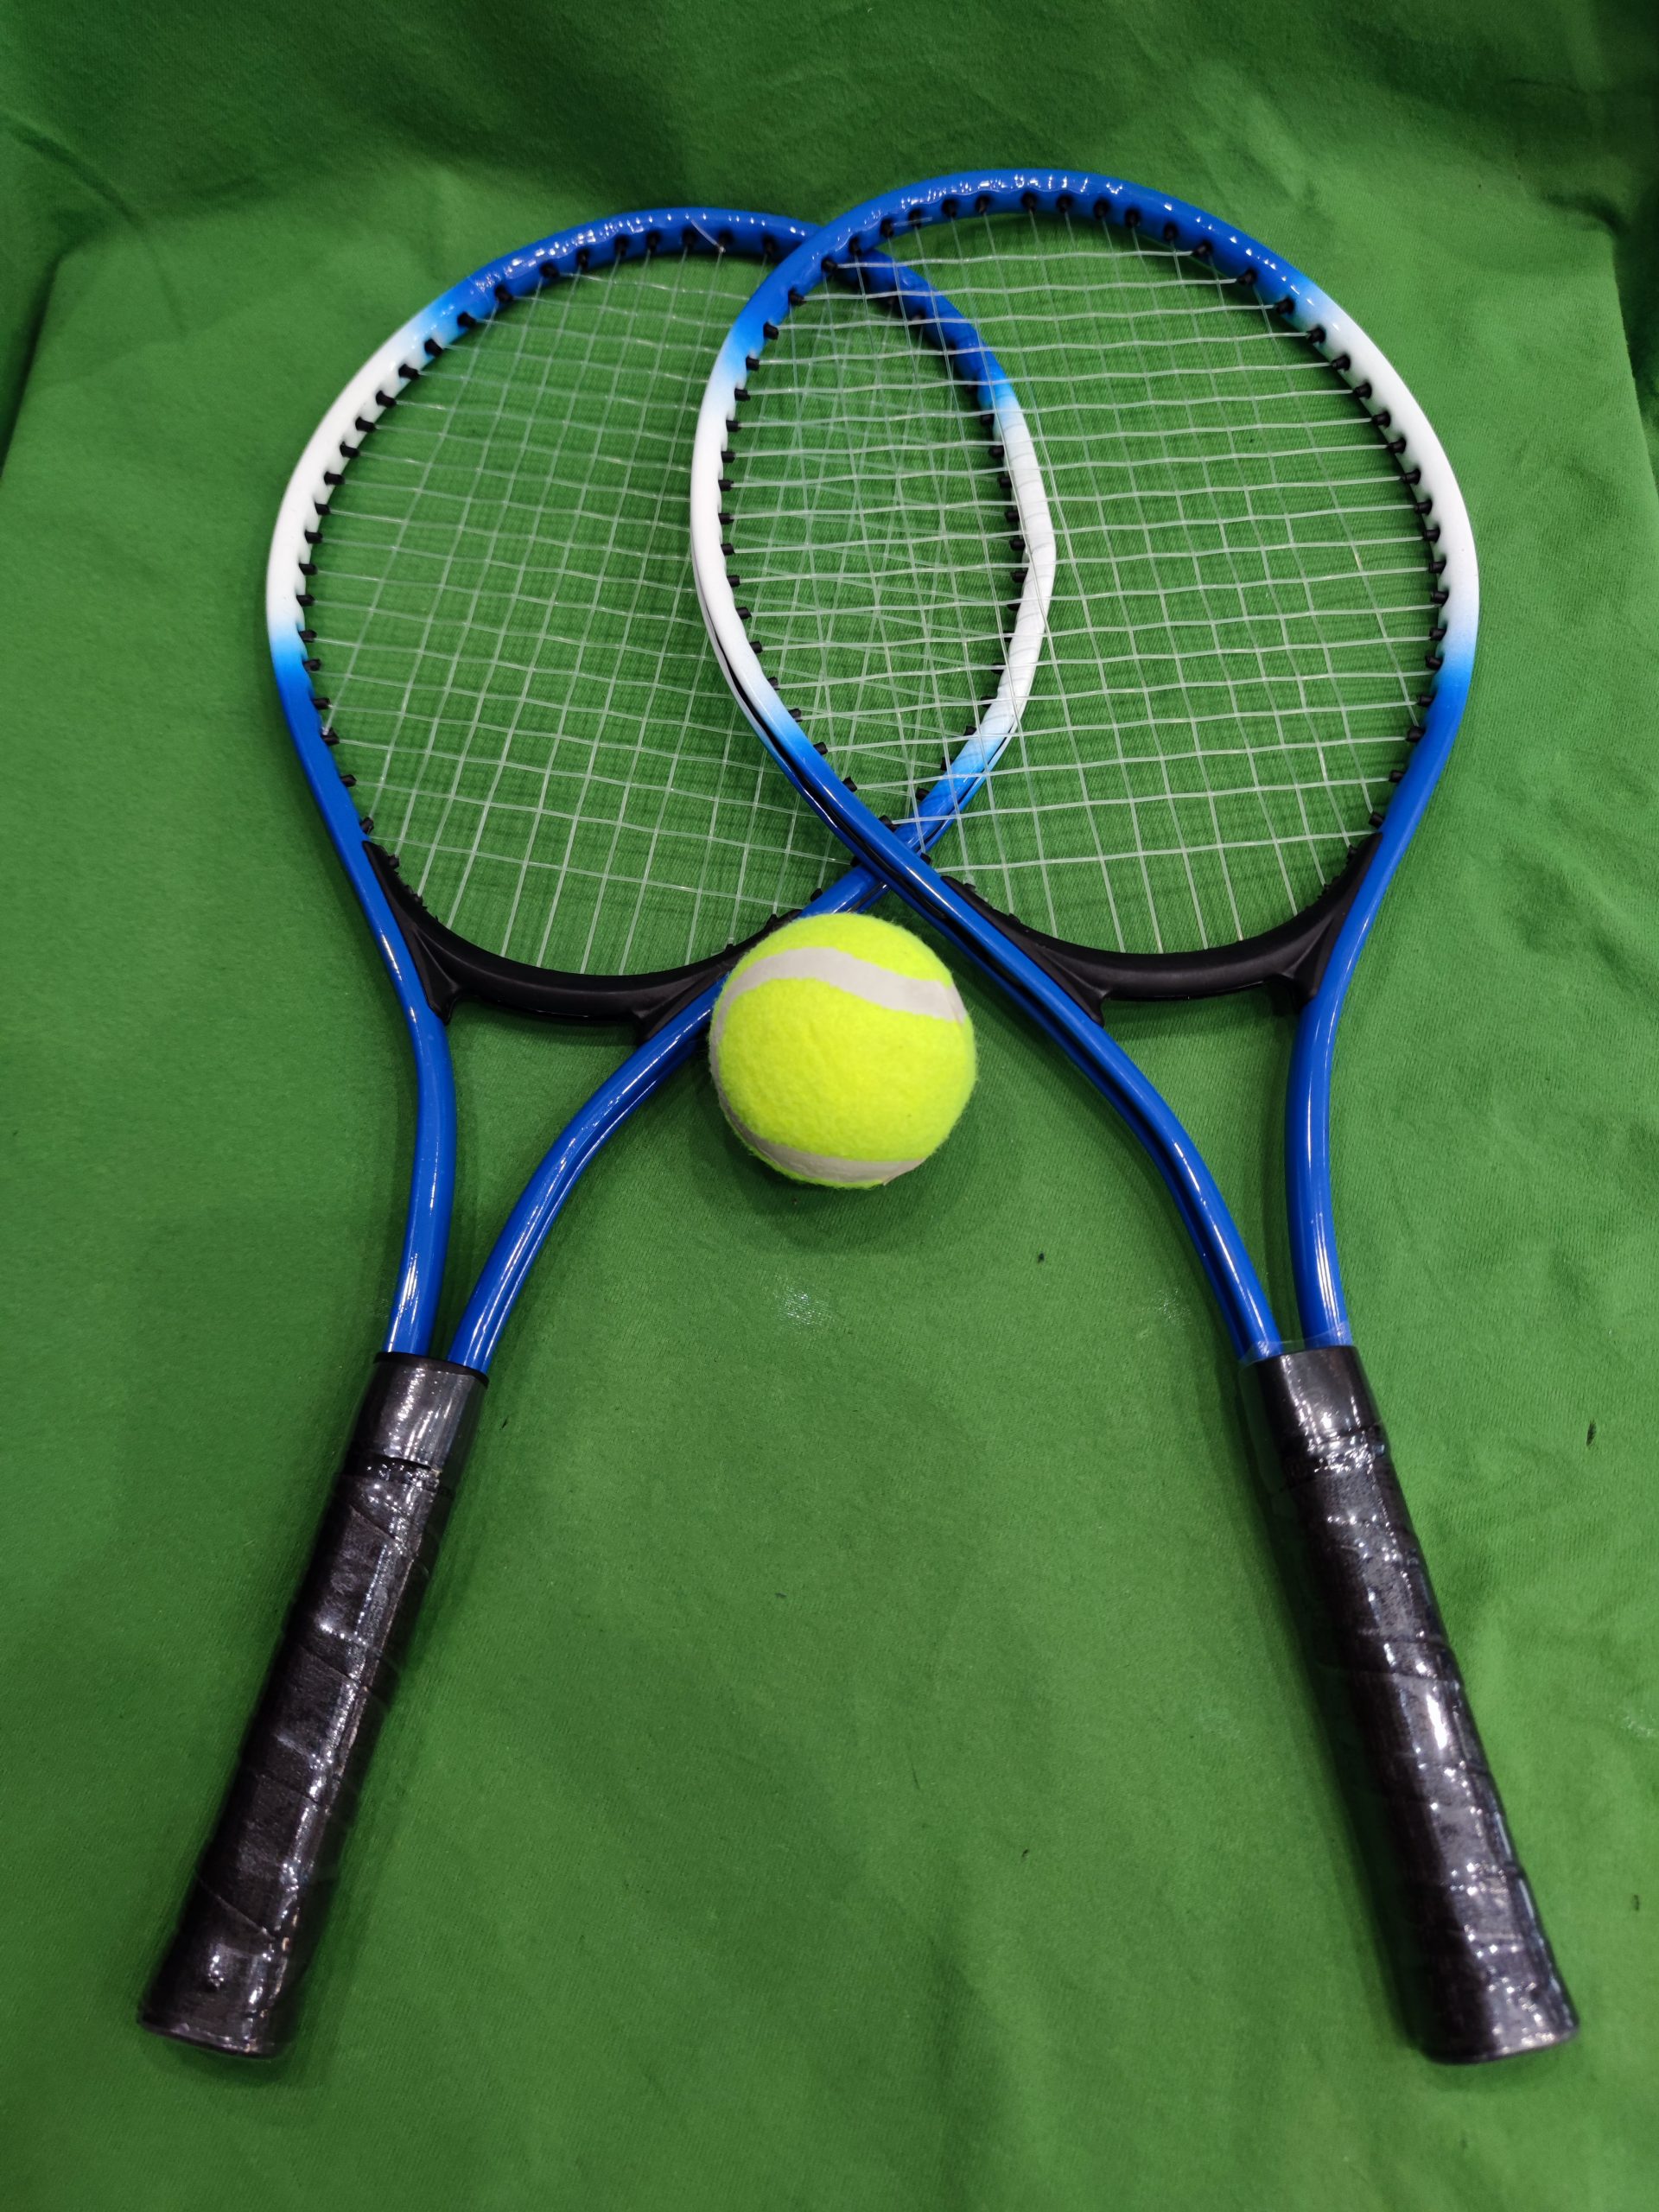 Regail teniszütő szett, kiemelt kép